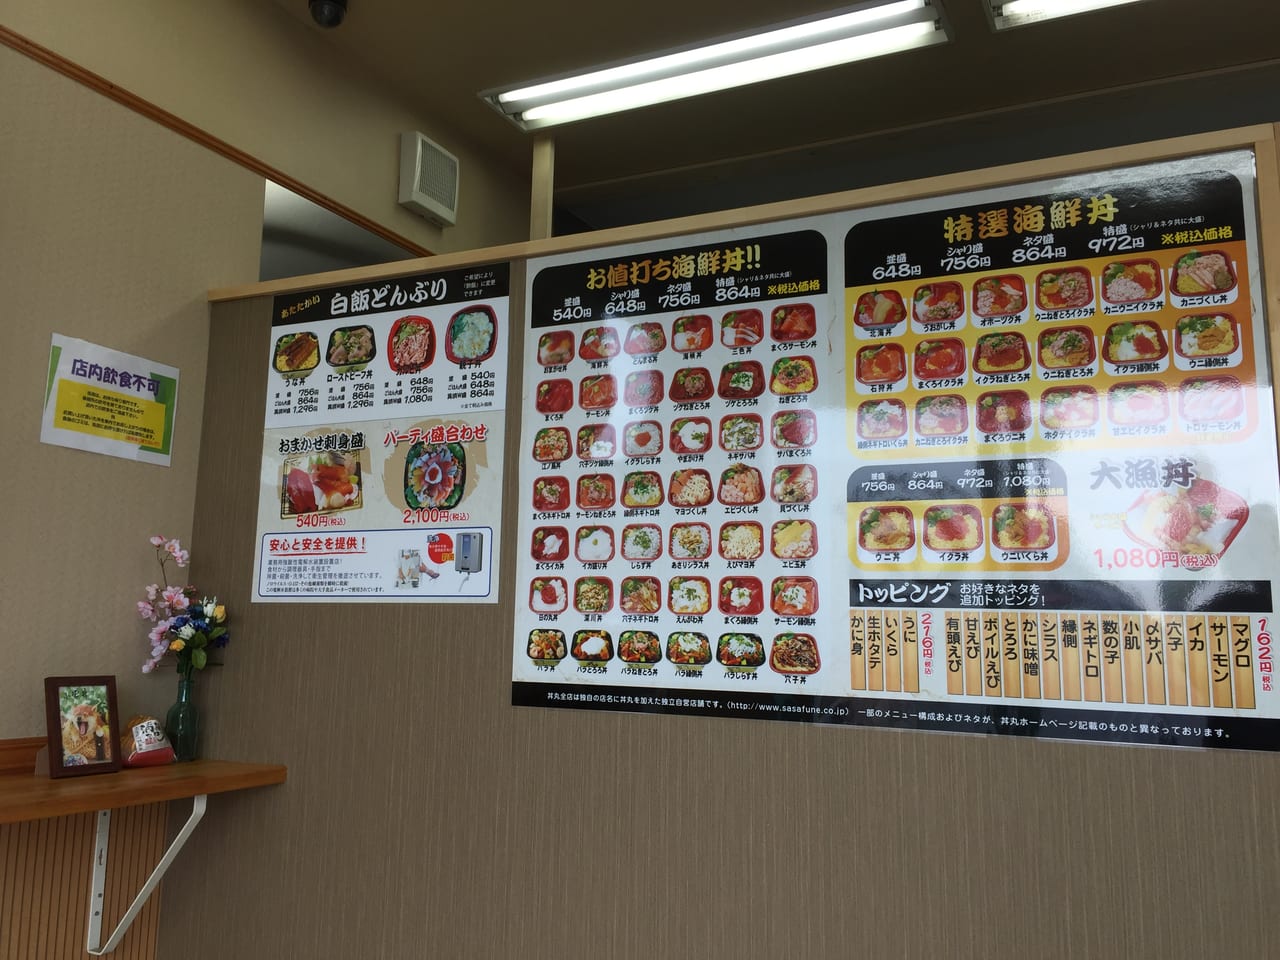 倉敷市 3月にオープンした海鮮丼のお店 海龍丼丸 児島店 に行ってきました 号外net 倉敷市